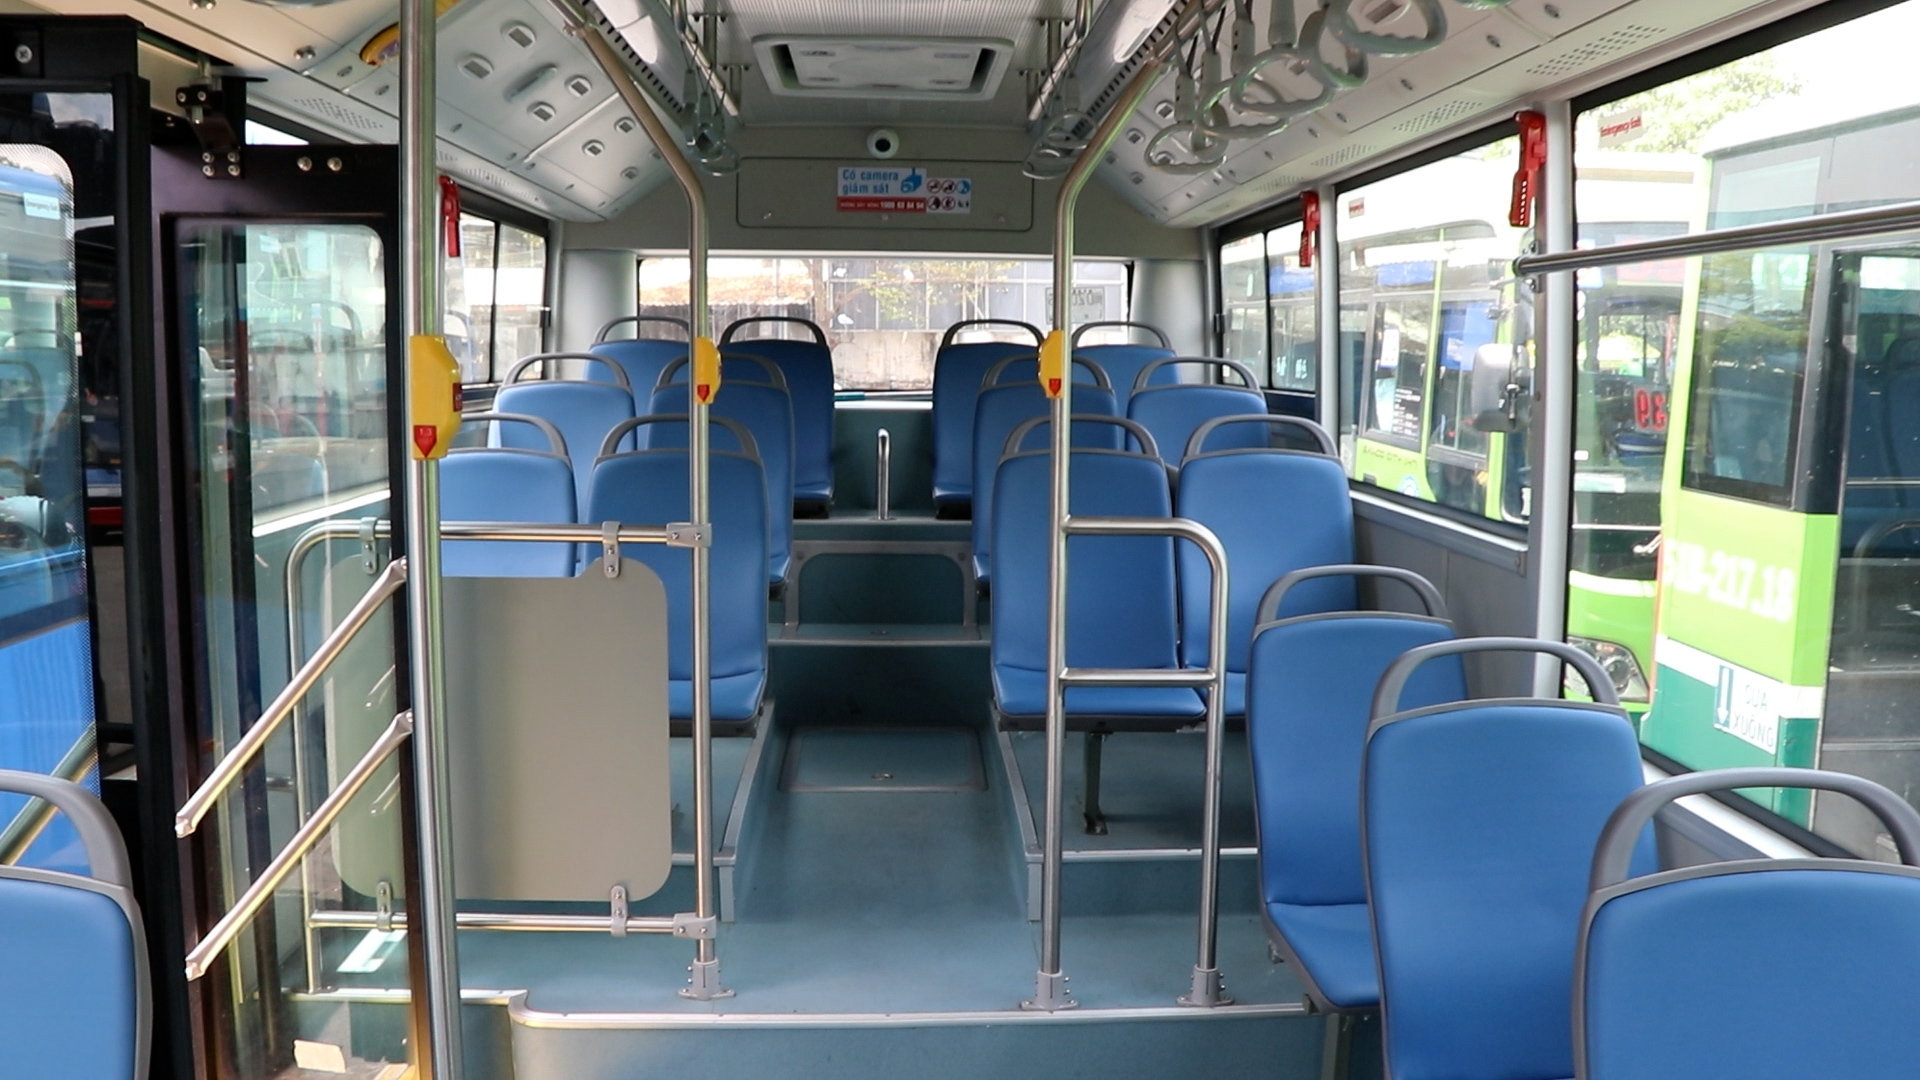 Trải nghiệm xe buýt của FUTABUSLINES: ‘Đây là một trong những chuyến xe buýt tốt nhất’- Ảnh 3.